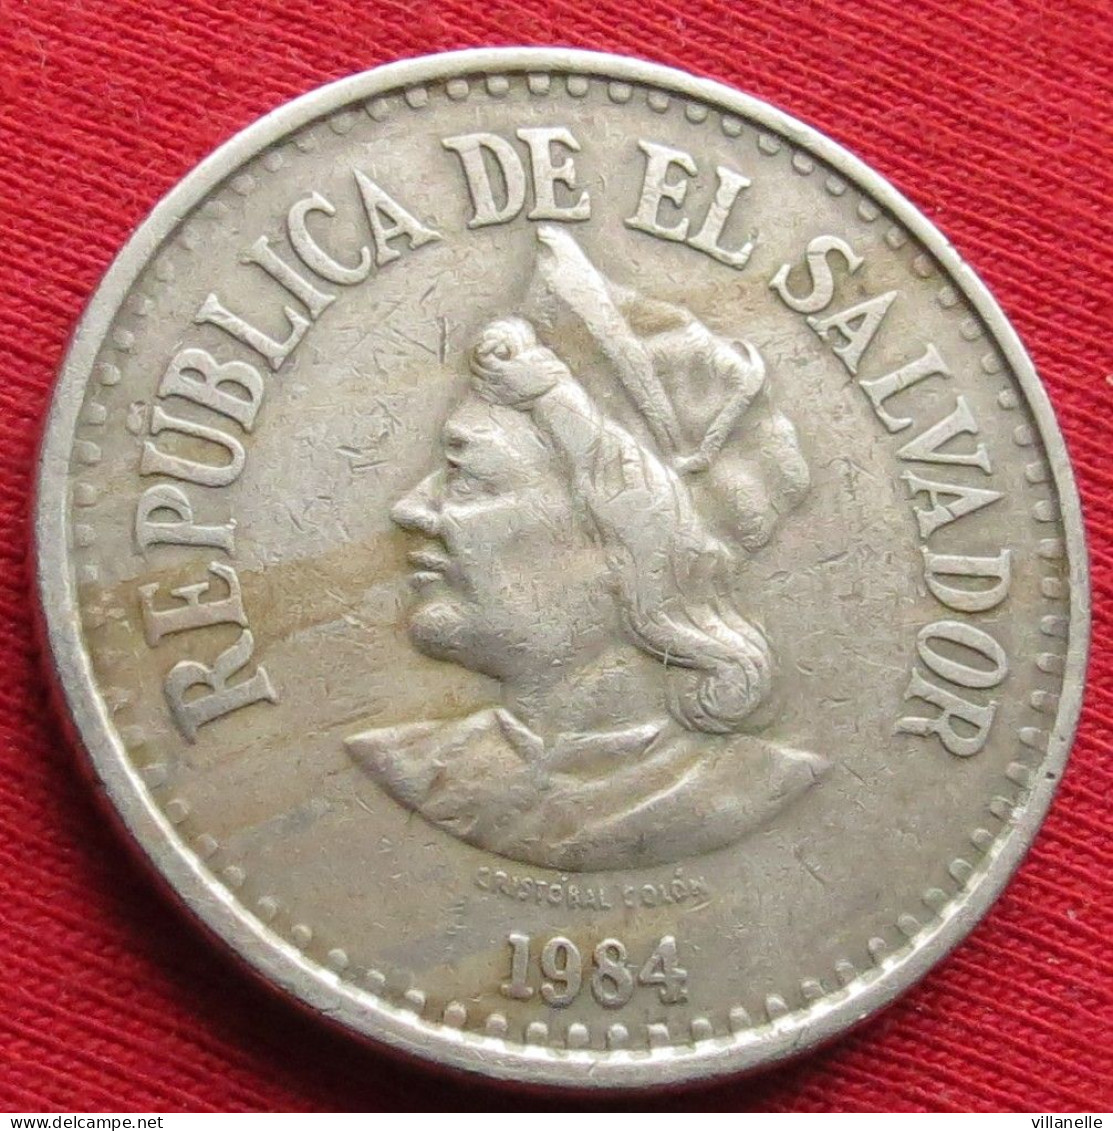 El Salvador 1 Colon 1984 W ºº - El Salvador